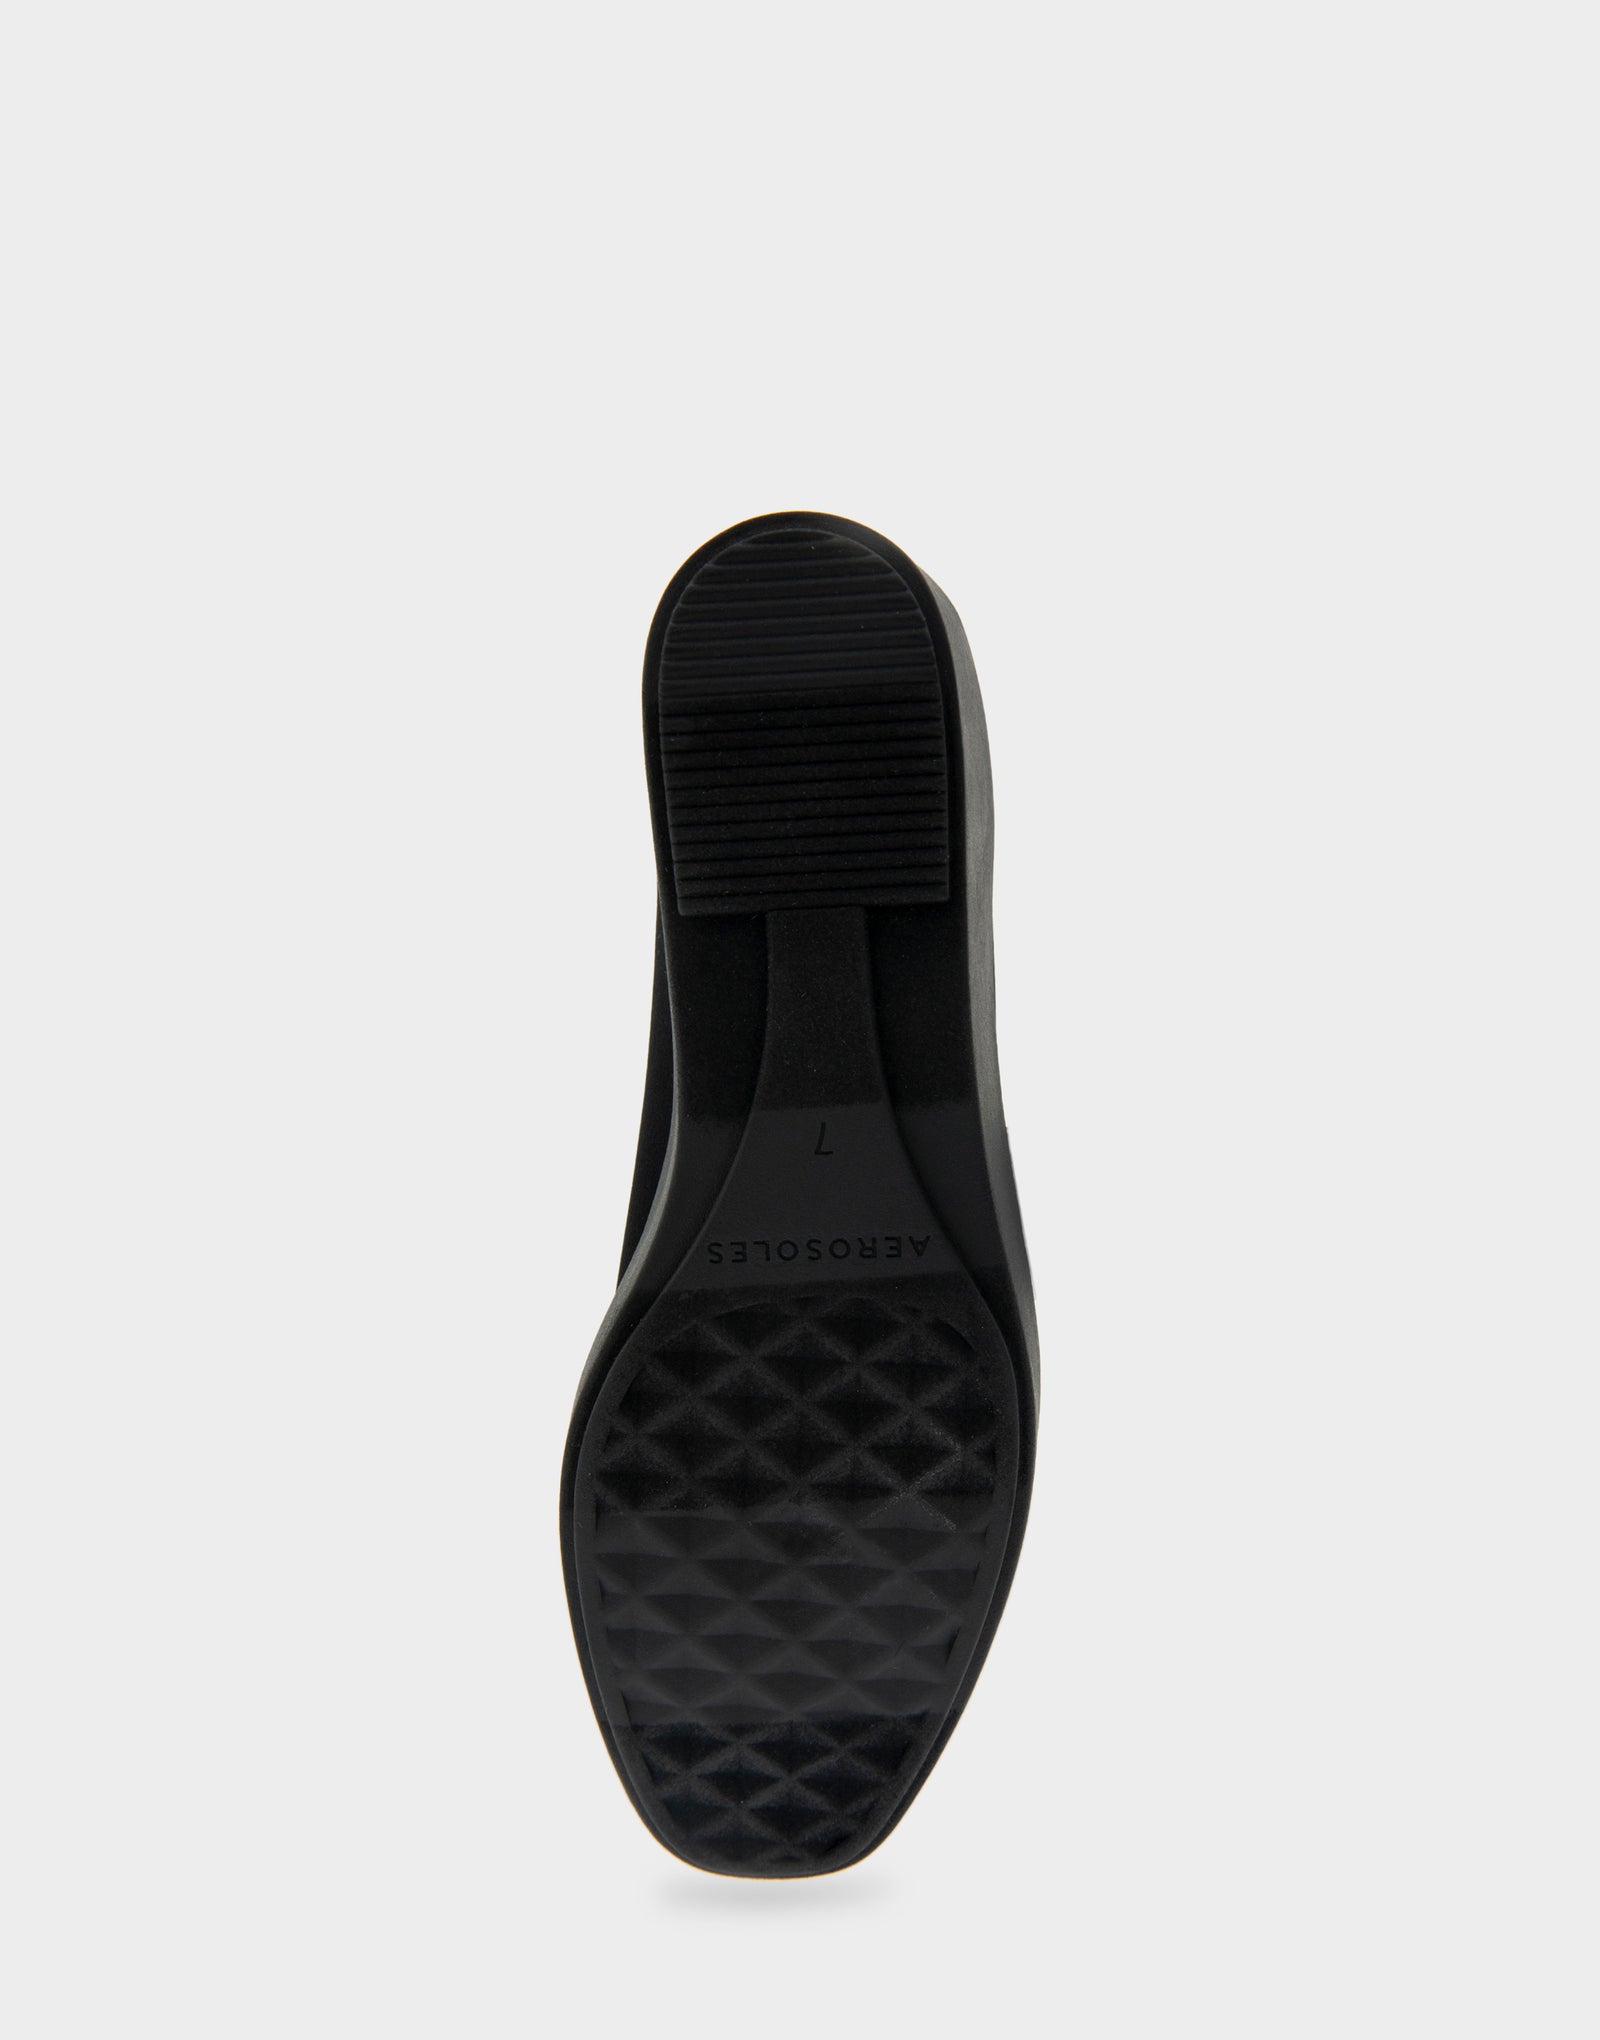 Women's Flatform Shoe in Black